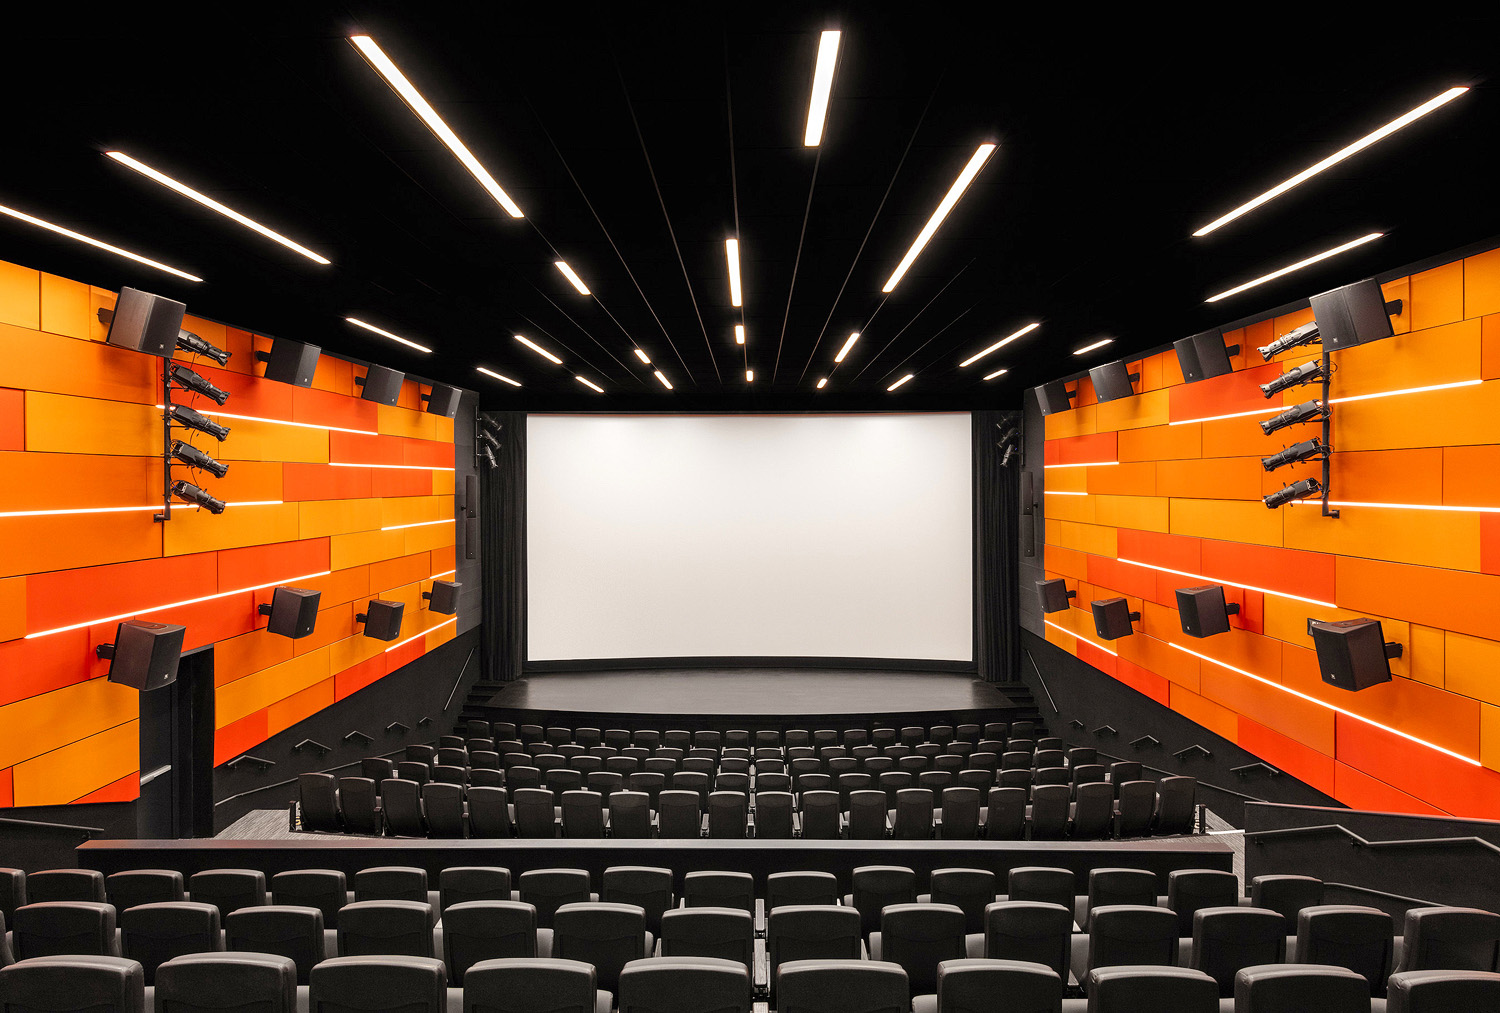 La salle Cinemark® du musée inclut un système de projection cinématographique intégrant un dispositif sonore et un système audiovisuel séparé qui supporte des événements publics et privés.